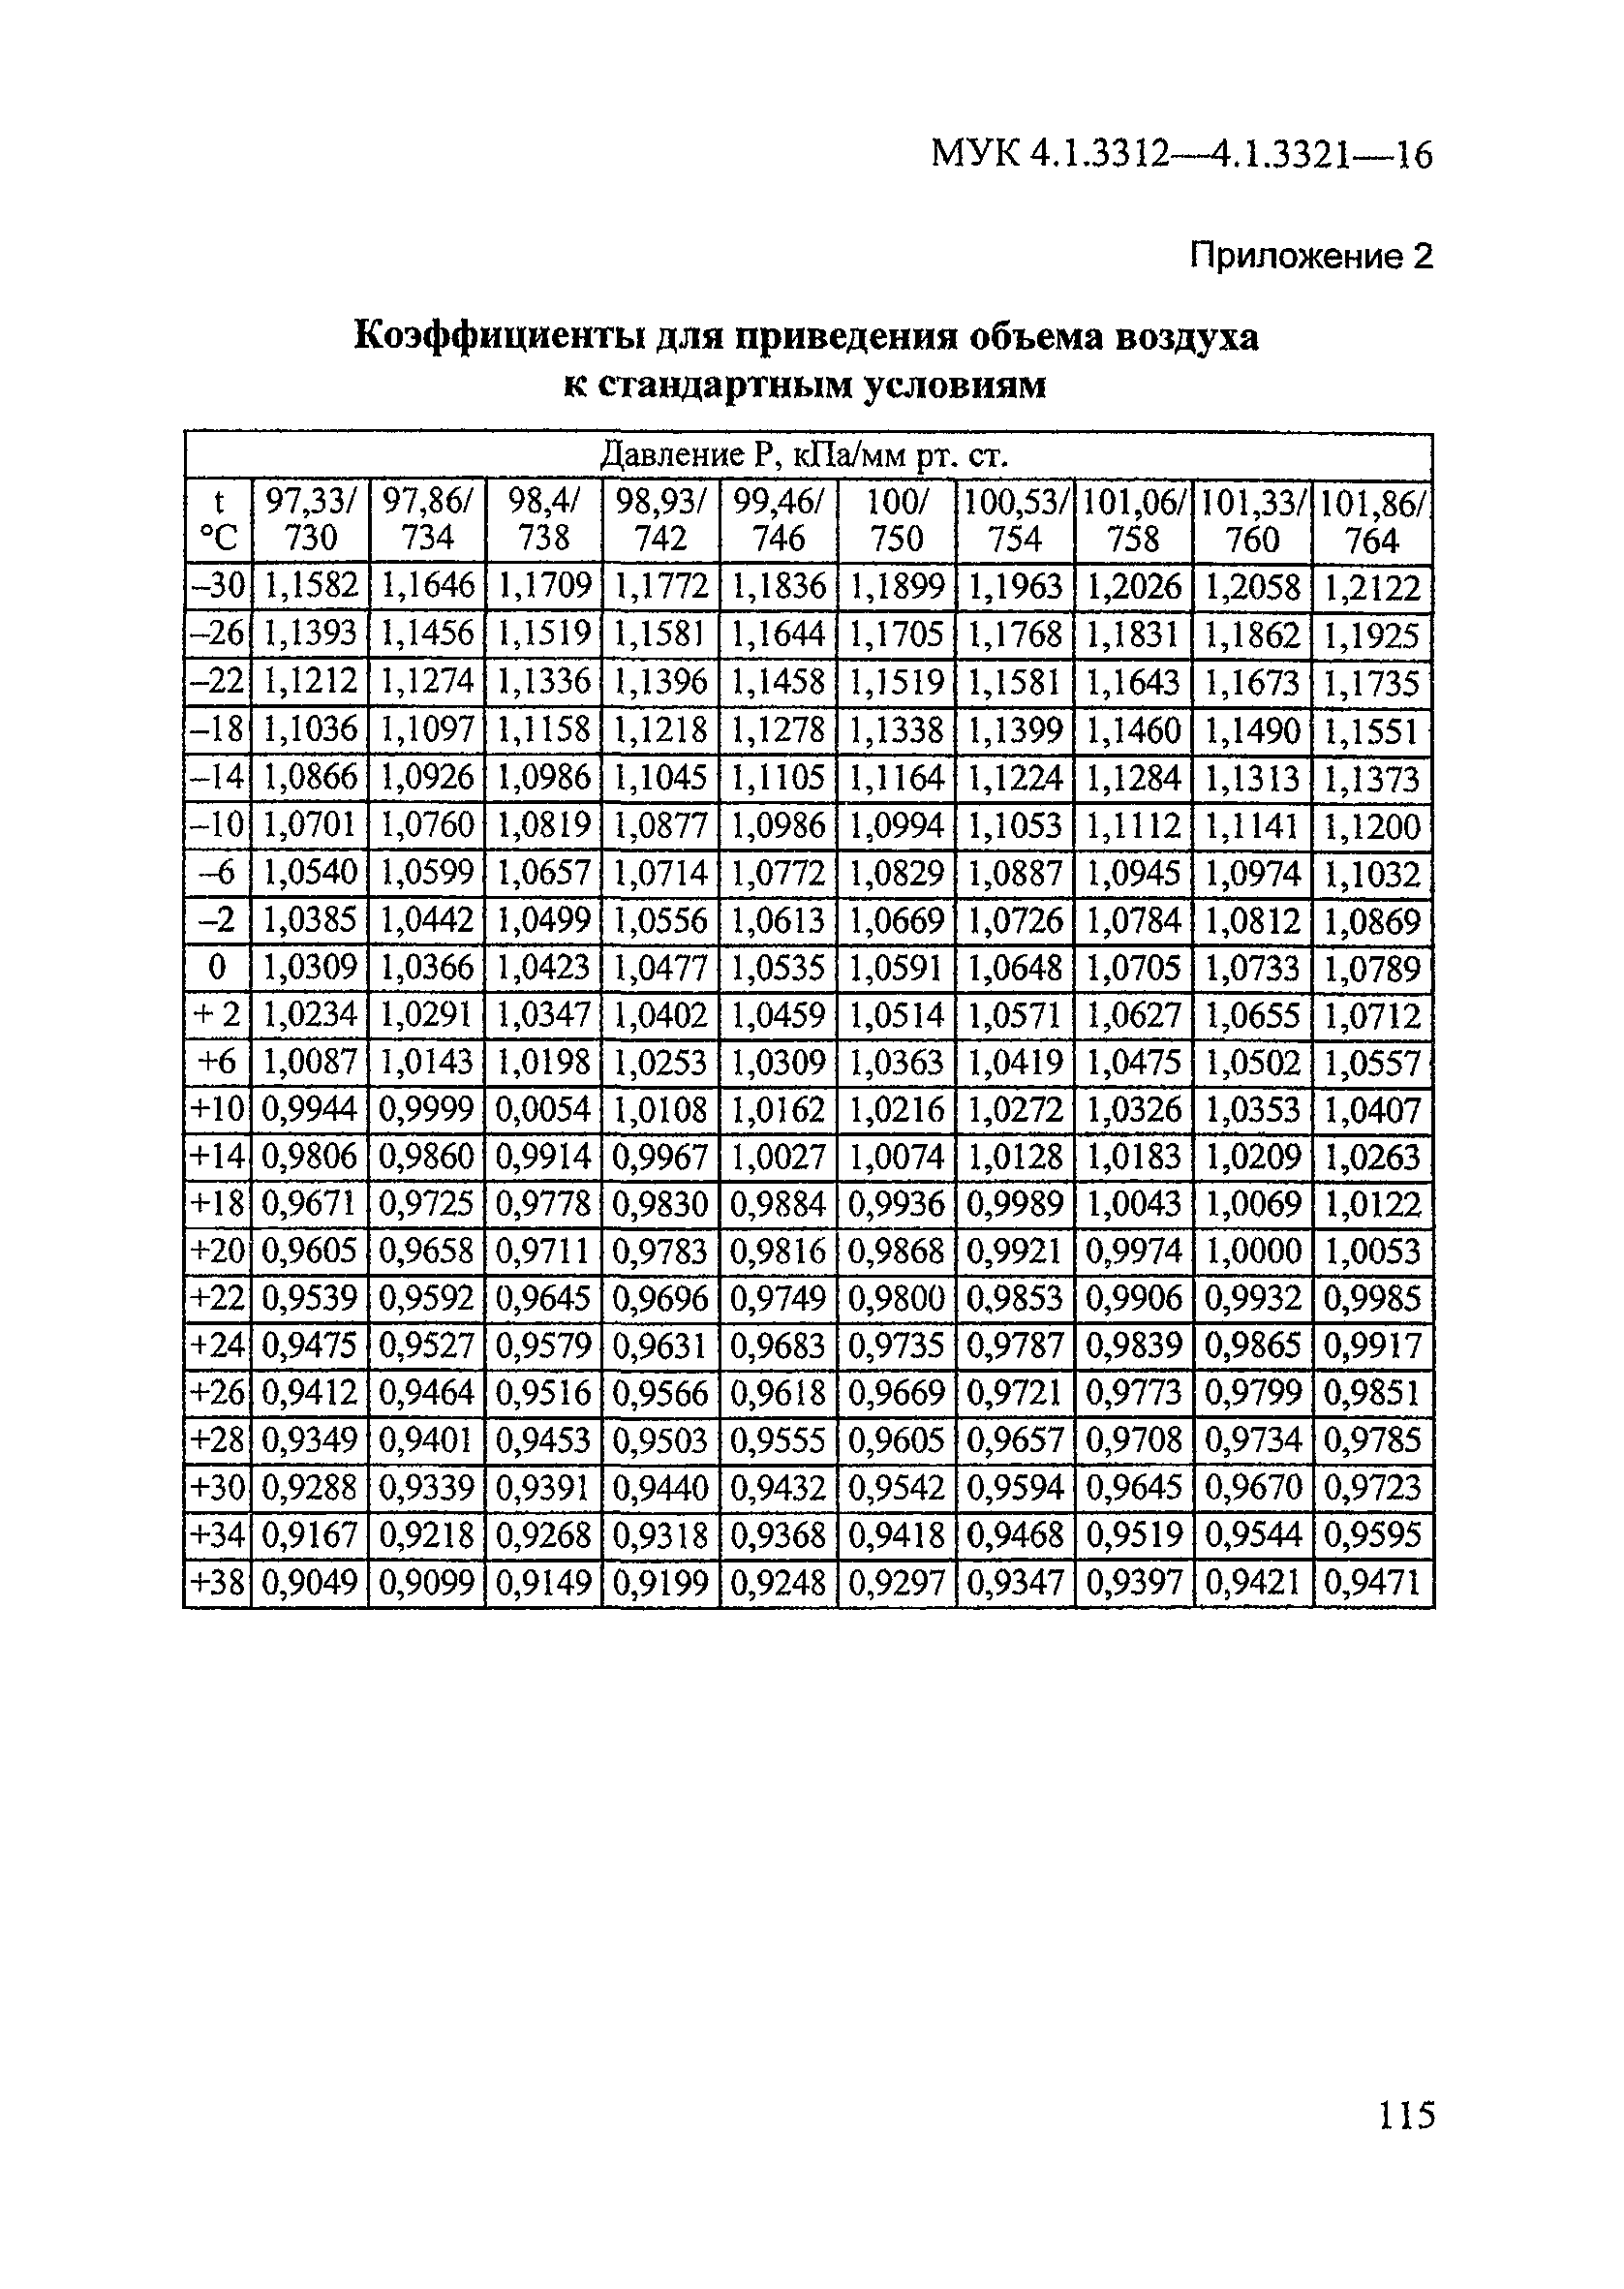 МУК 4.1.3313-15